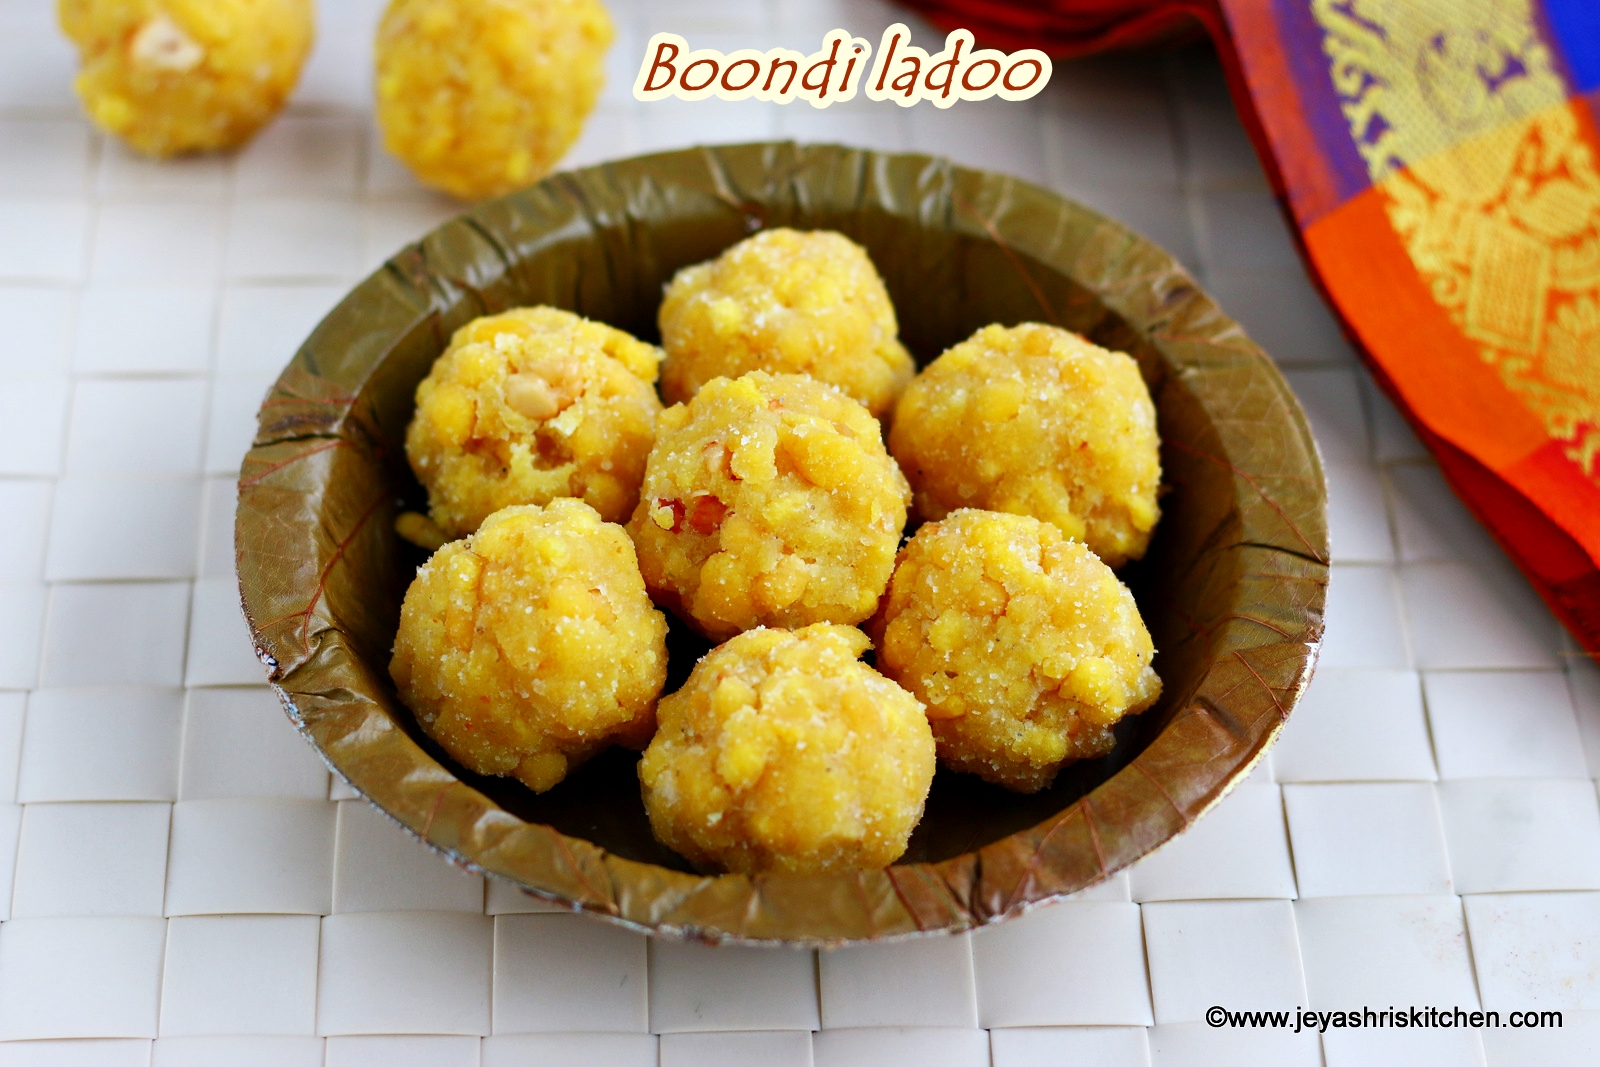 Boondi Ladoo How To Make Boondi Ladoo Diwali Sweet Recipe Ladoo Recipe With Video Jeyashri S Kitchen